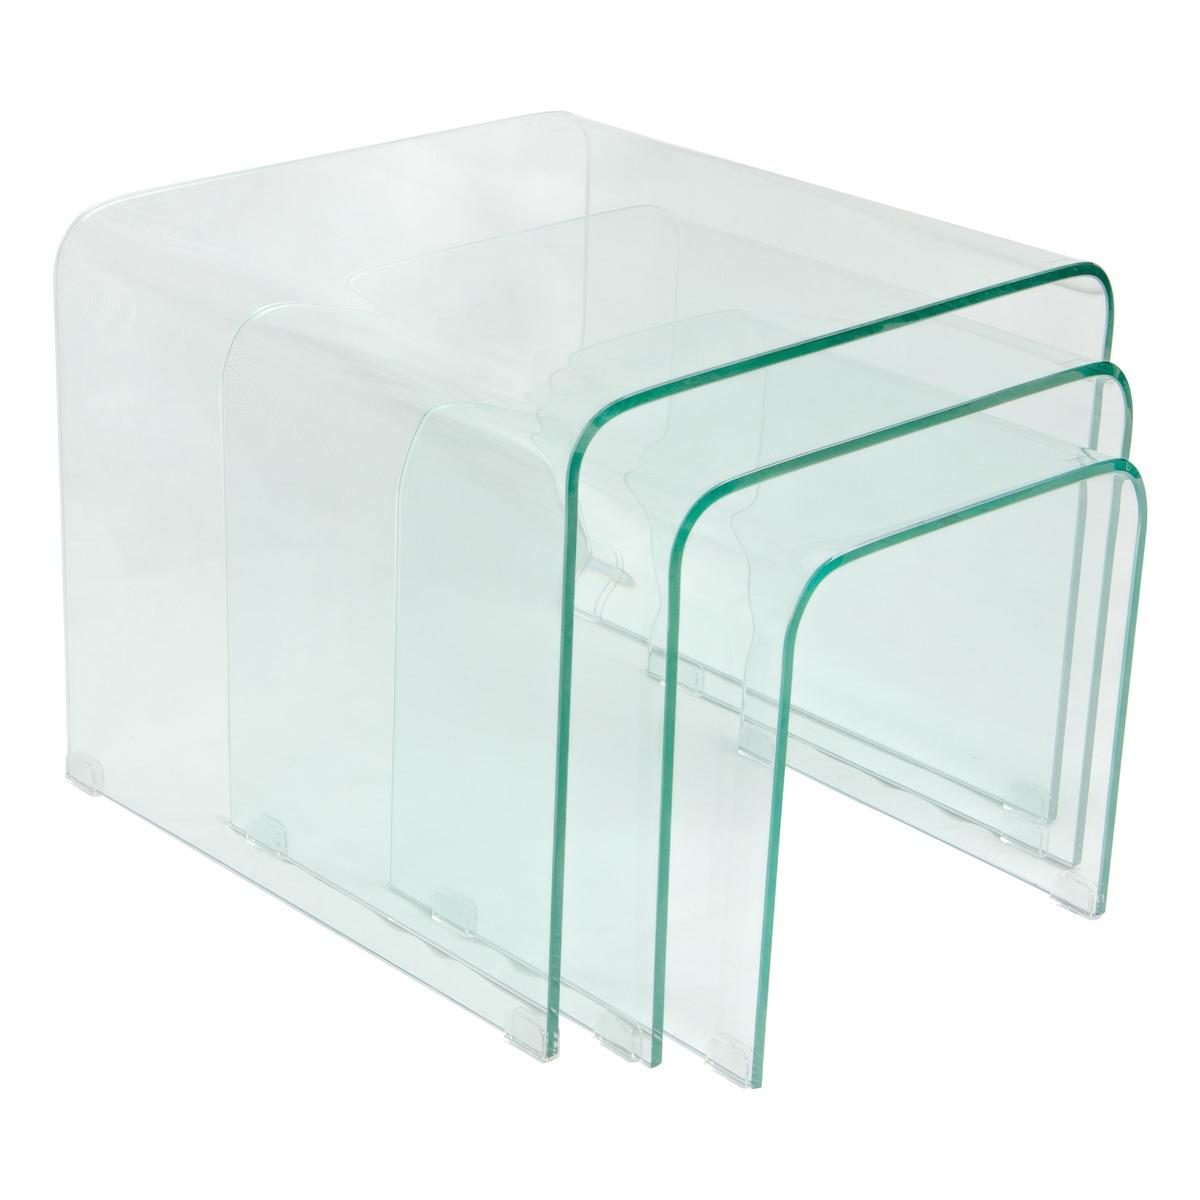 Table basse en verre trempé - 40 x 40 x 40 cm - Transparent